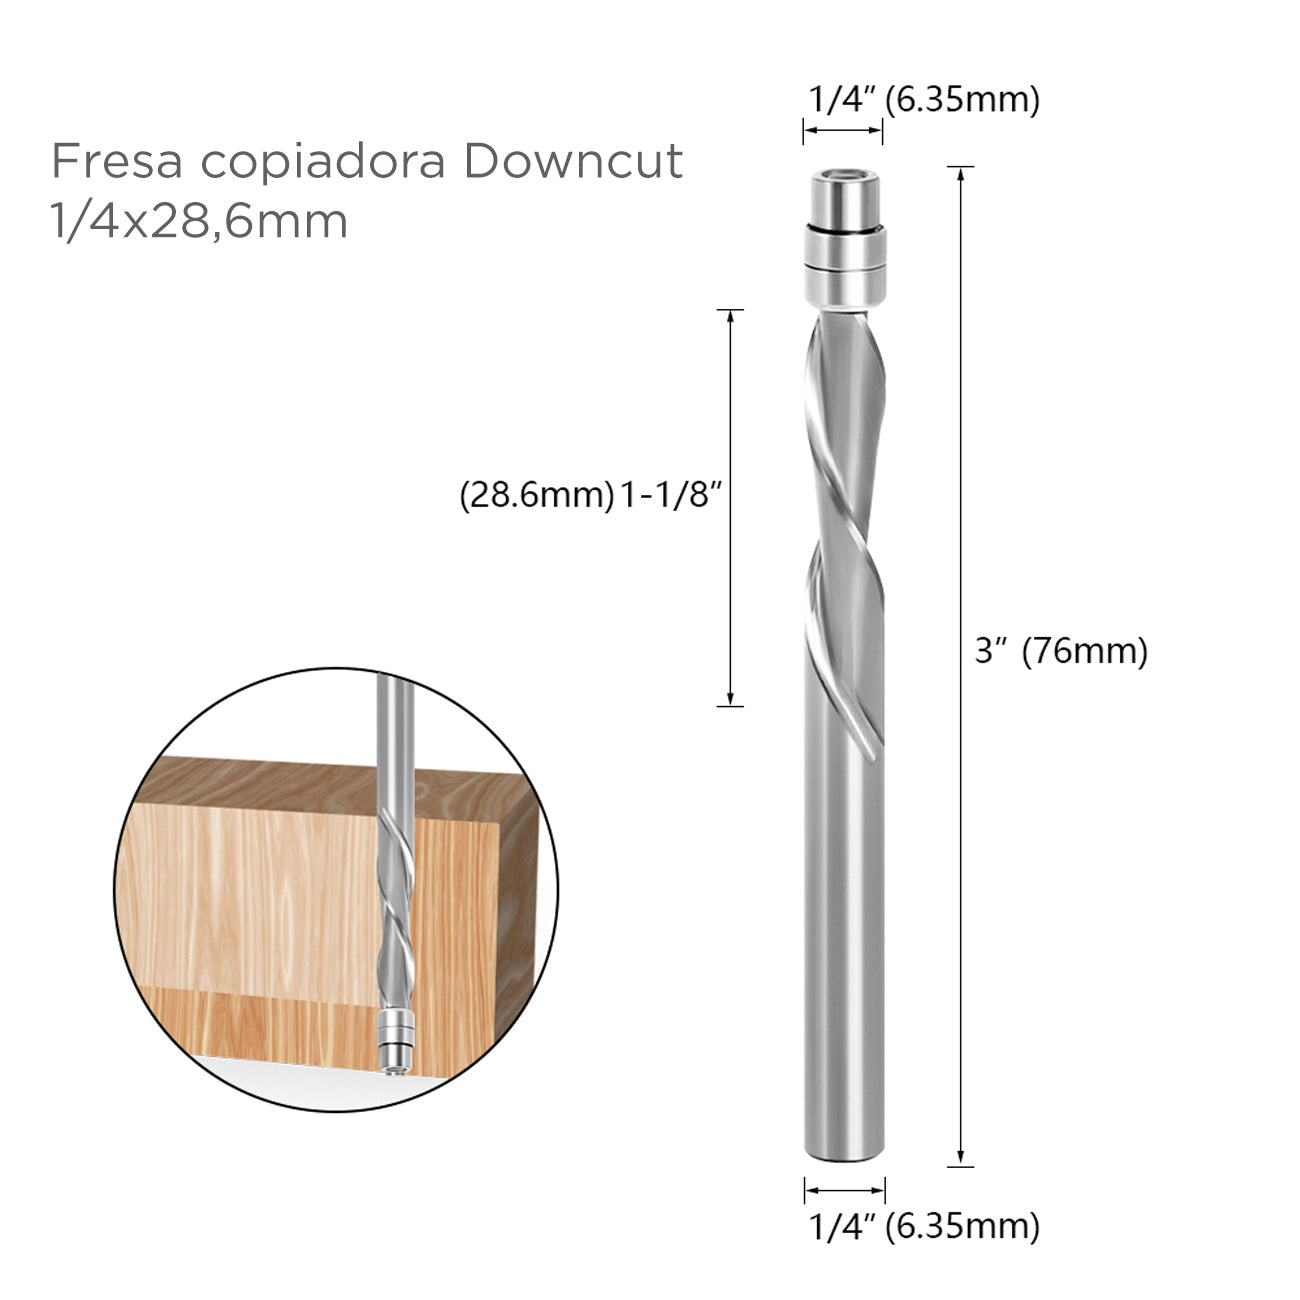 fresa copiadora Downcut 1/4x28,6mm – Fresamadera